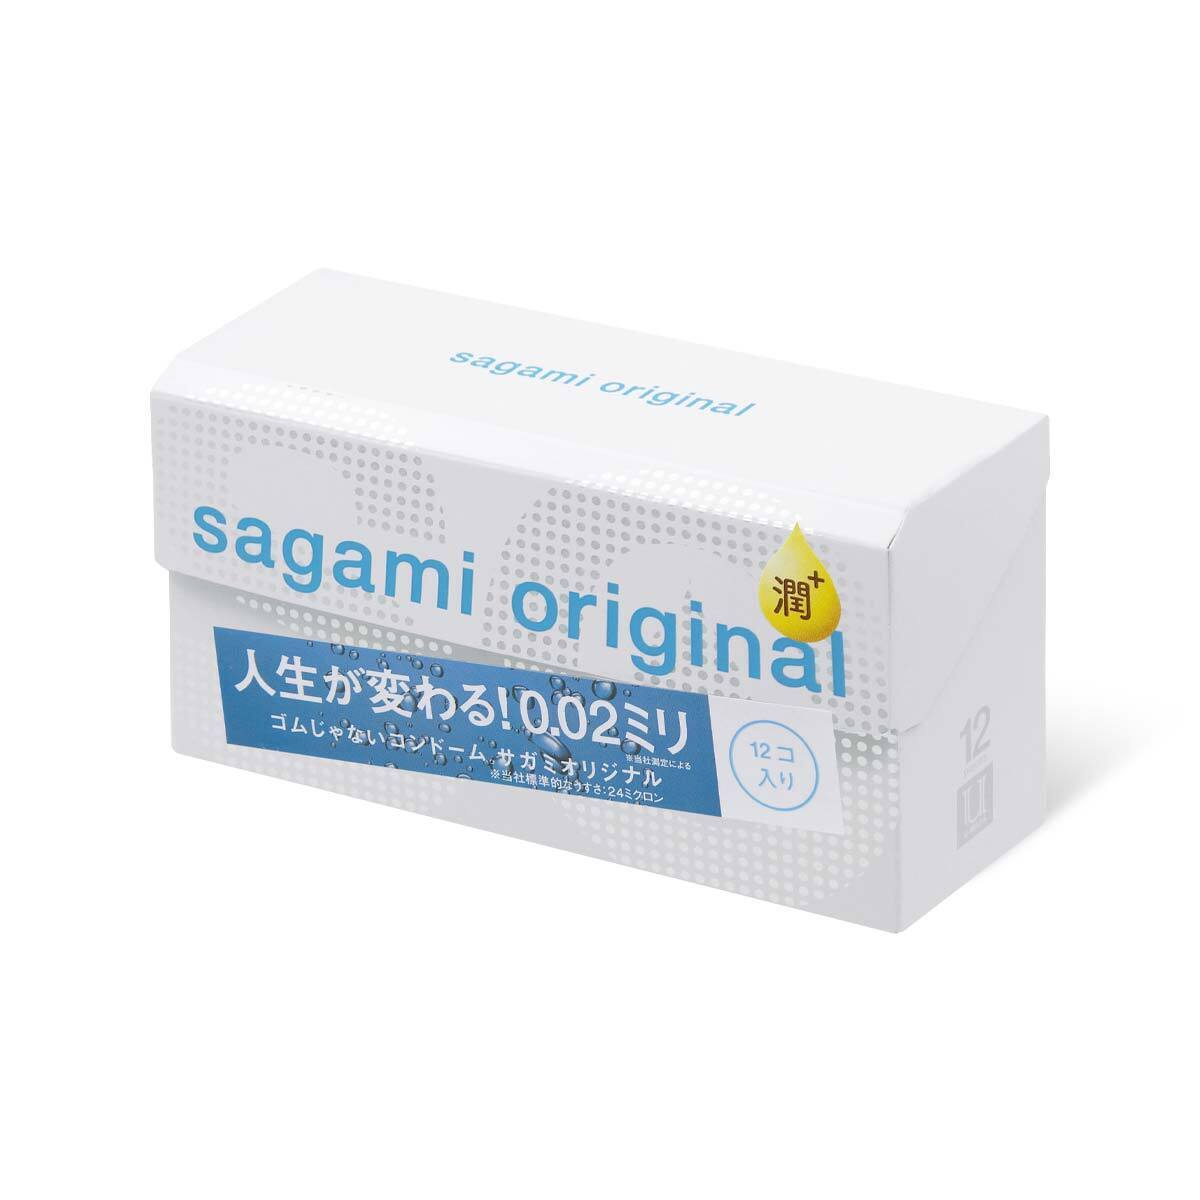 Sagami Original 0.02 Extra Lub с увеличенным количеством смазки - 12 шт.